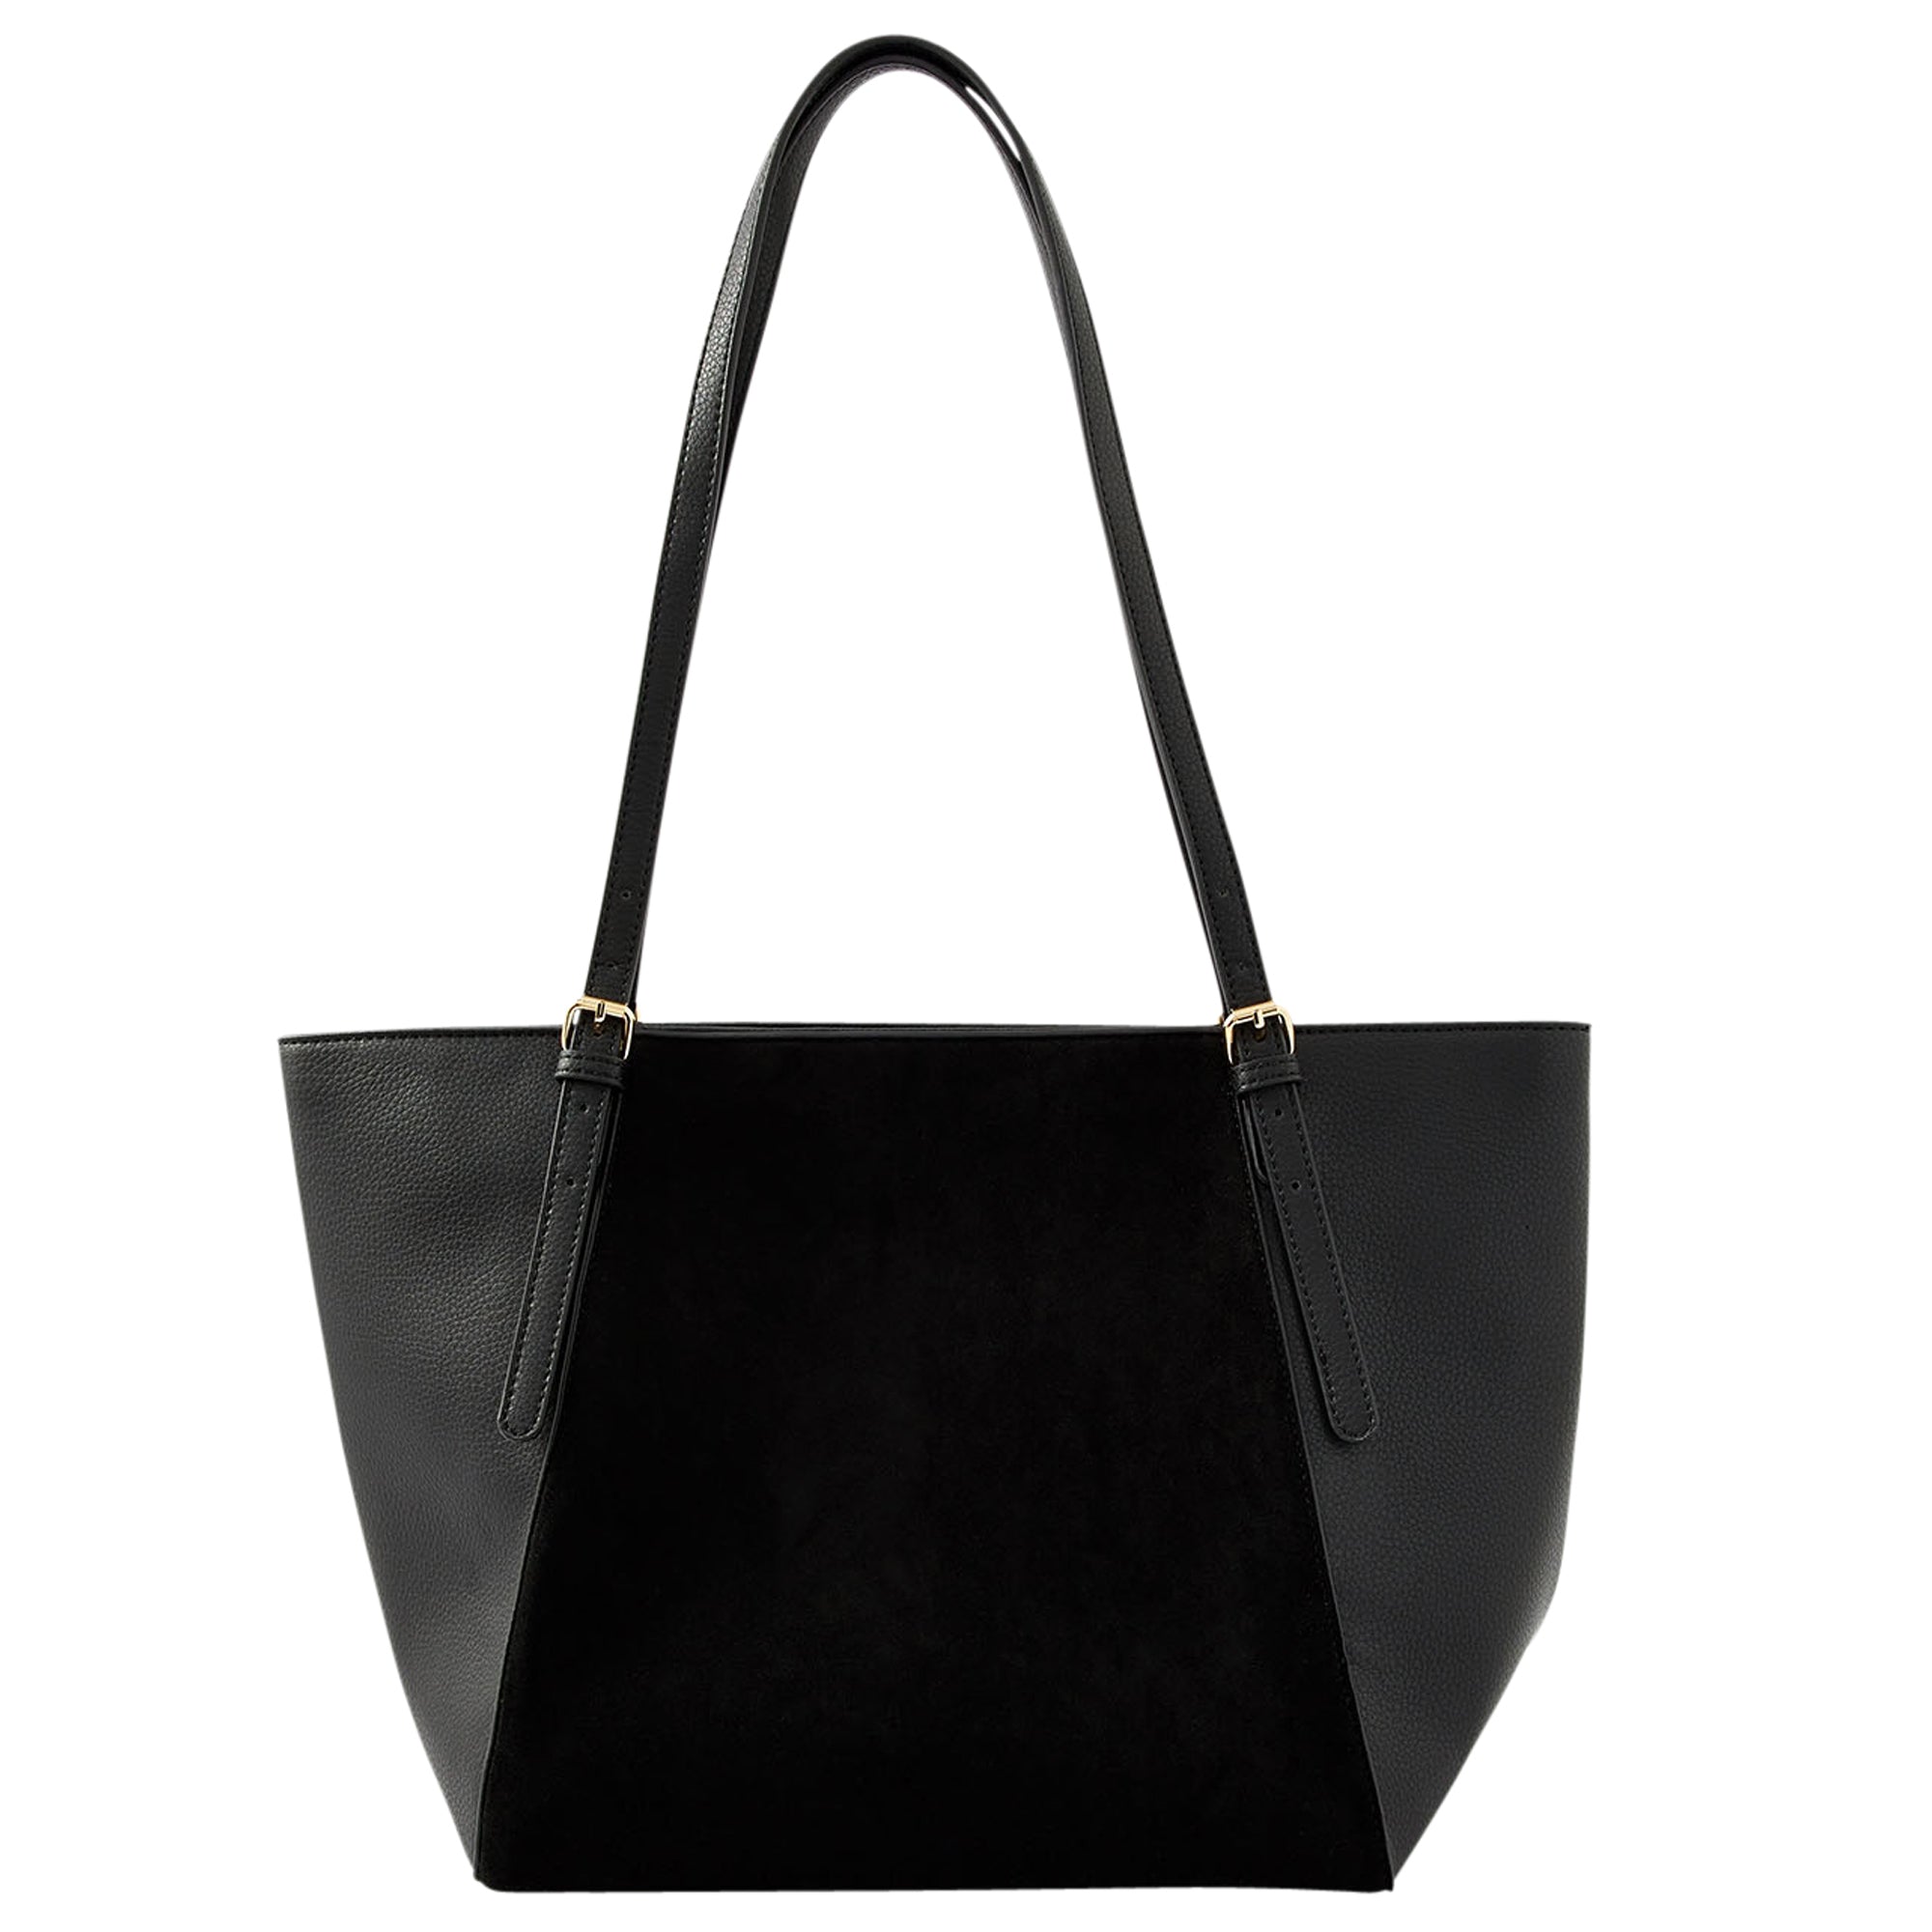 Buy ACCESSORIZE LONDON Women Black Shoulder Bag BLACK Online